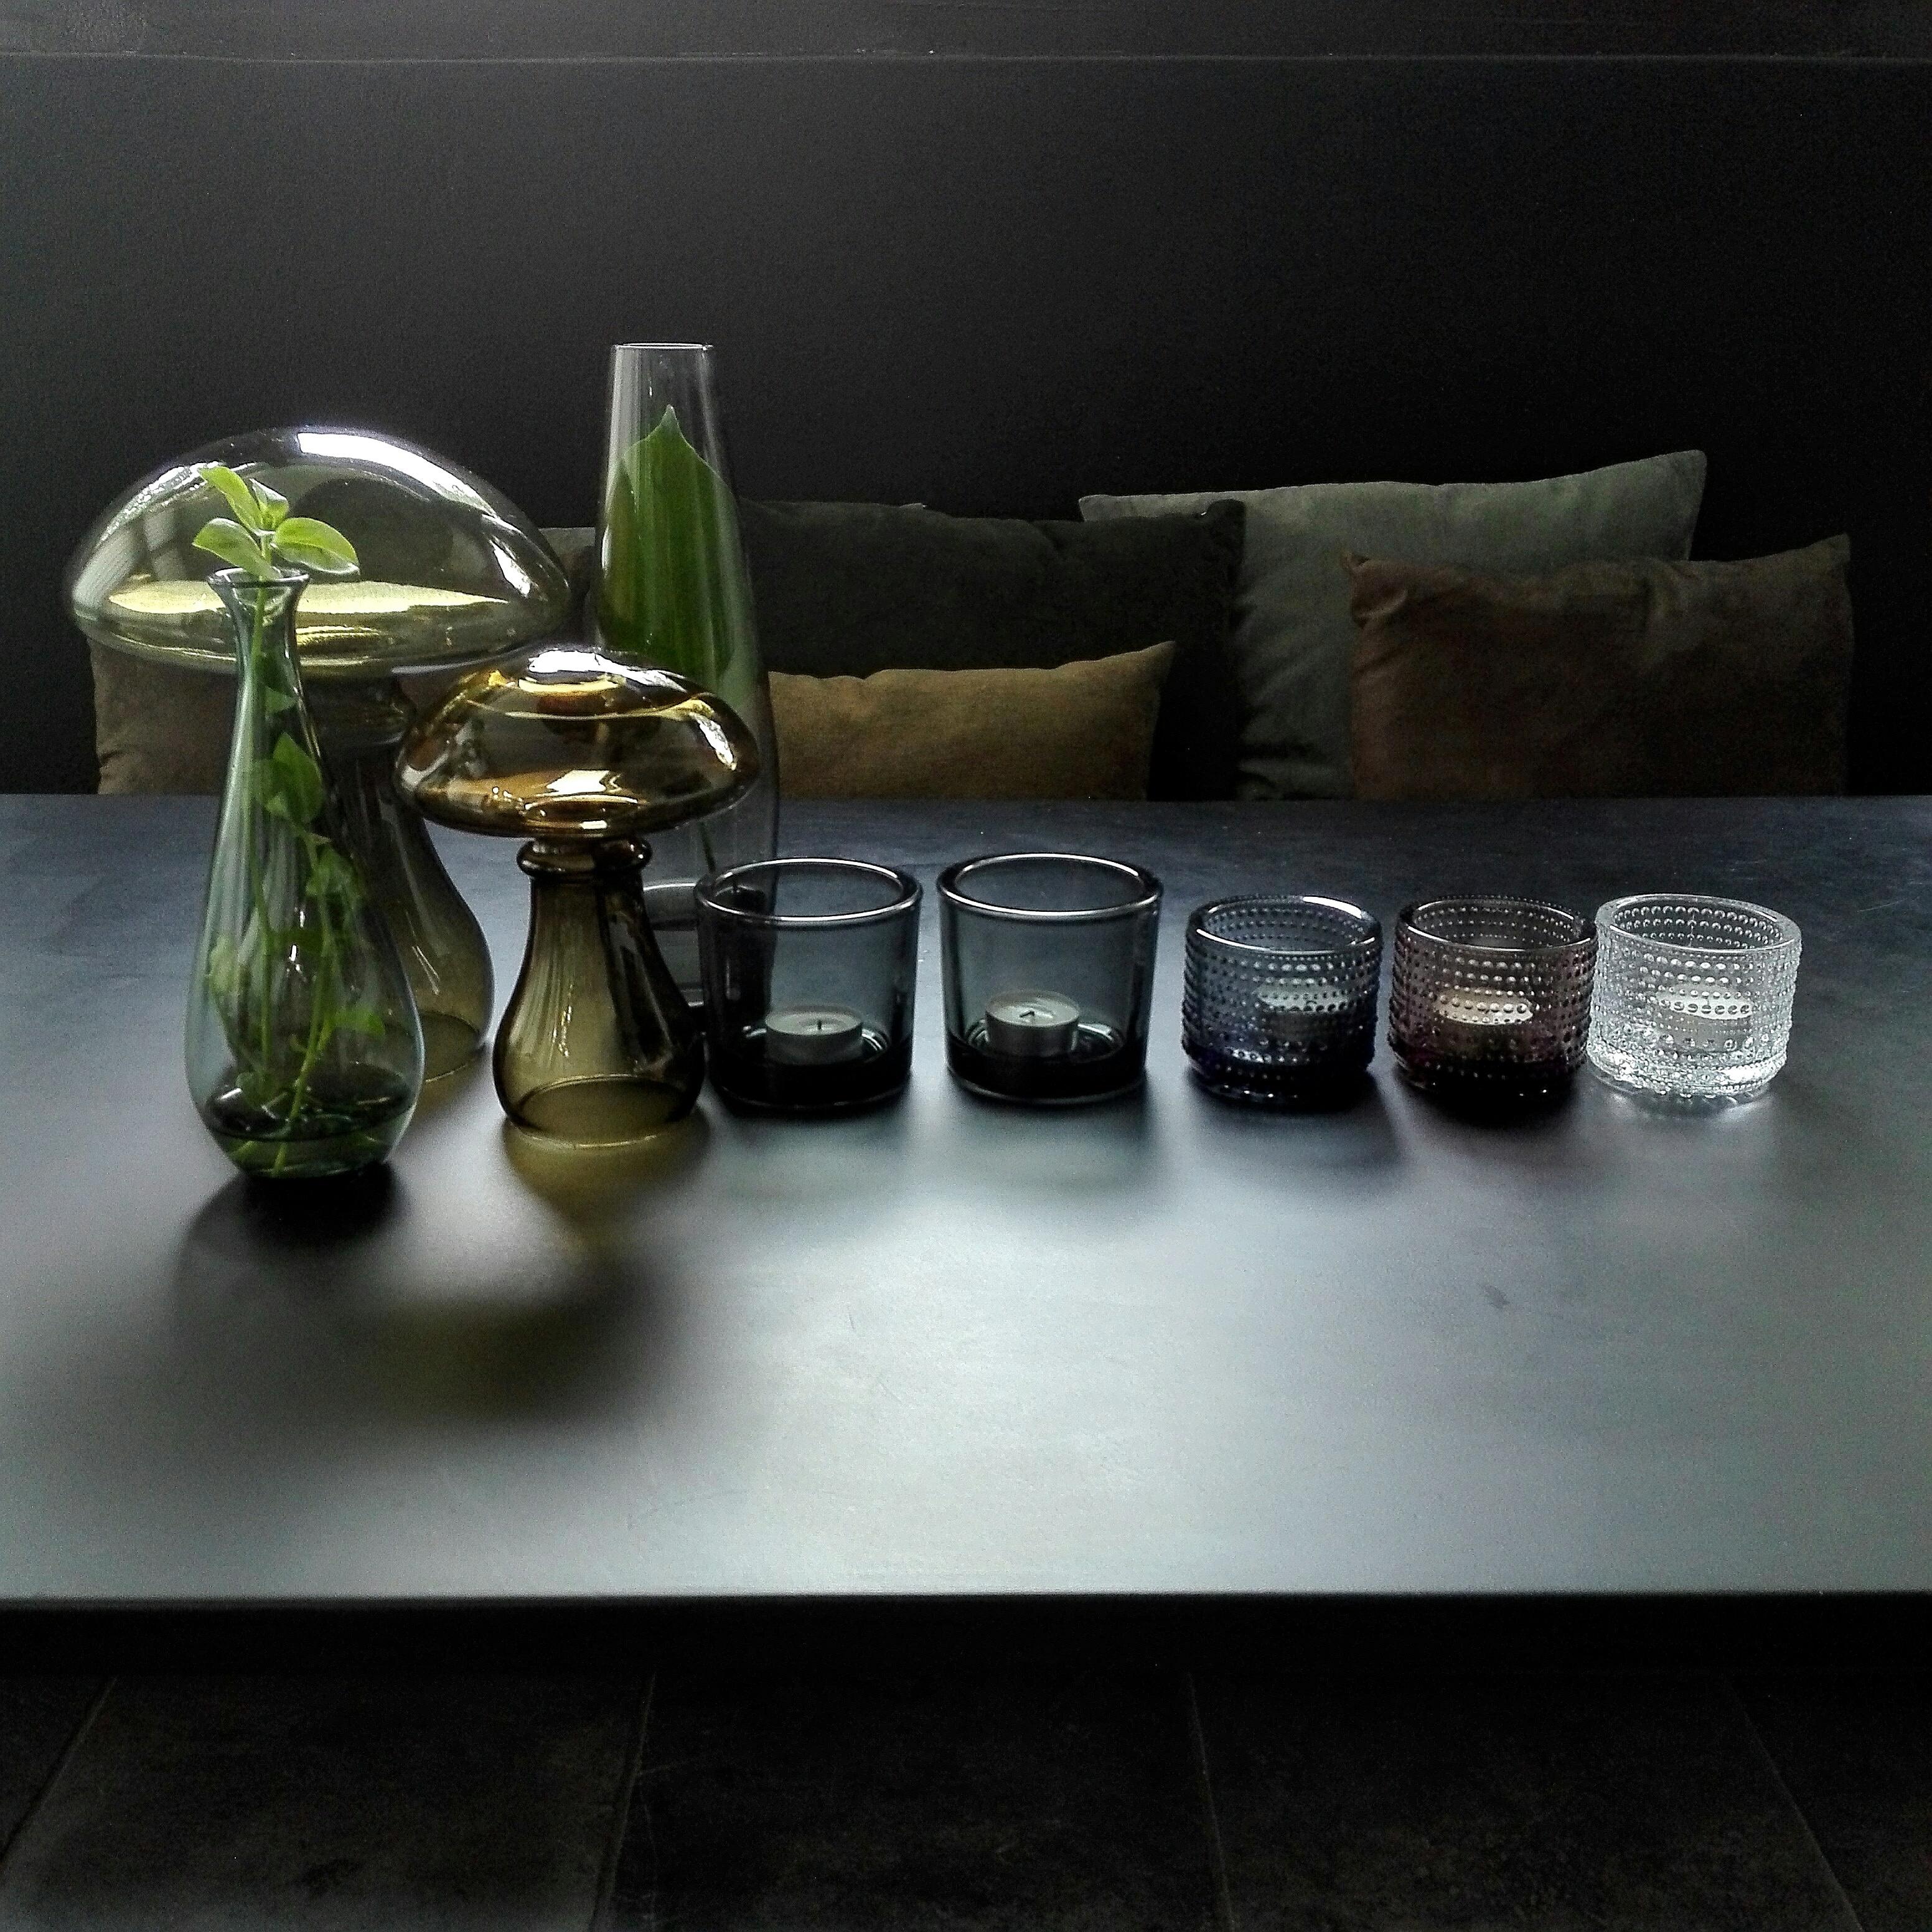 #Rauchglas, für mich seit 20 Jahren Trend, neues ergänzt die liebsten #vintage Stücke  #deko #darkliving #kastelhelmi #autumn